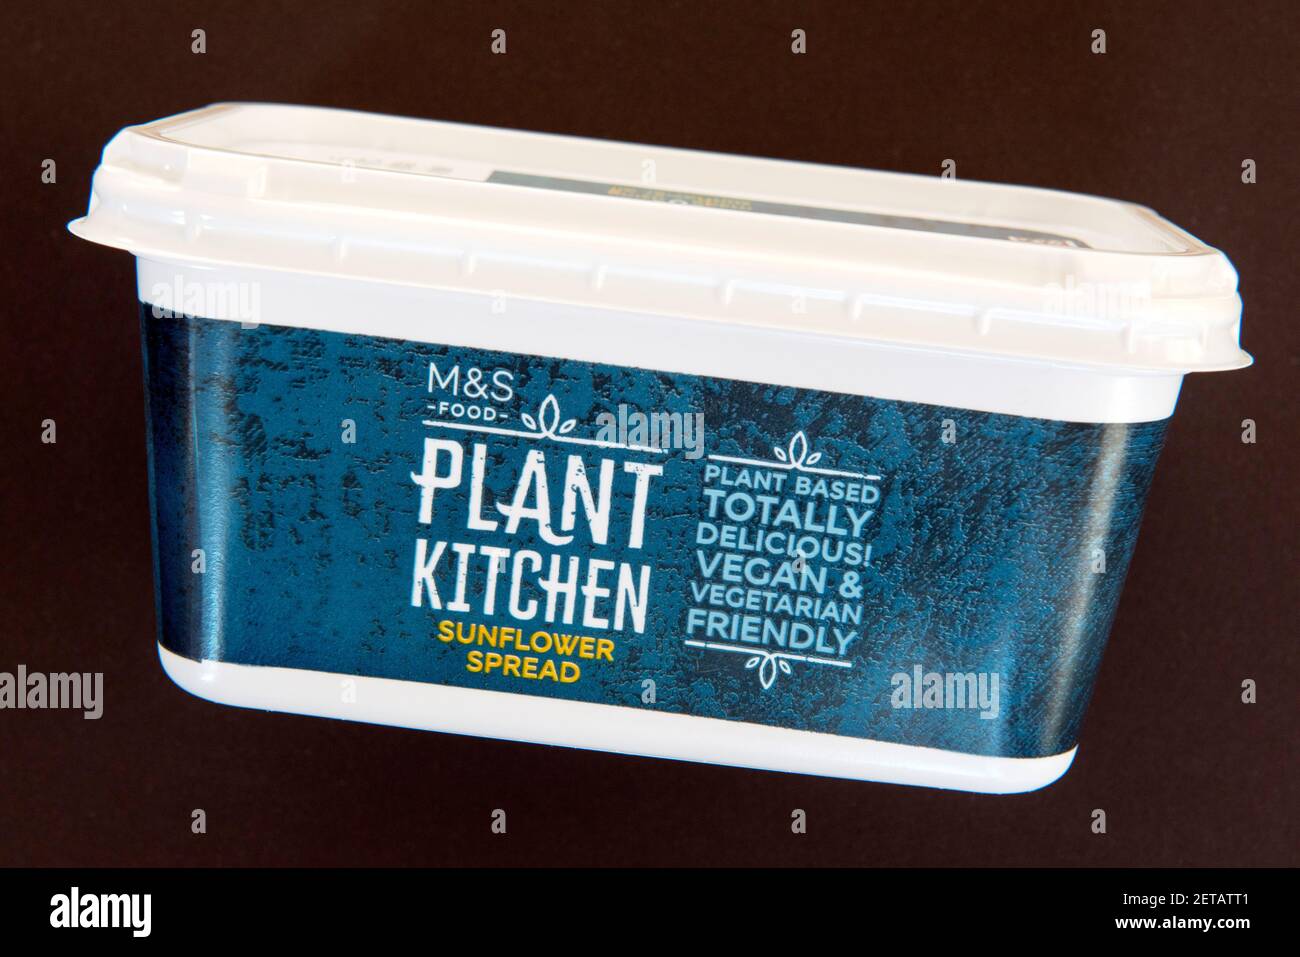 Wanne von M&S Food Plant Küche vegane Sonnenblumenverbreitung Molkerei freie Margarine isoliert auf schwarzem Hintergrund Stockfoto